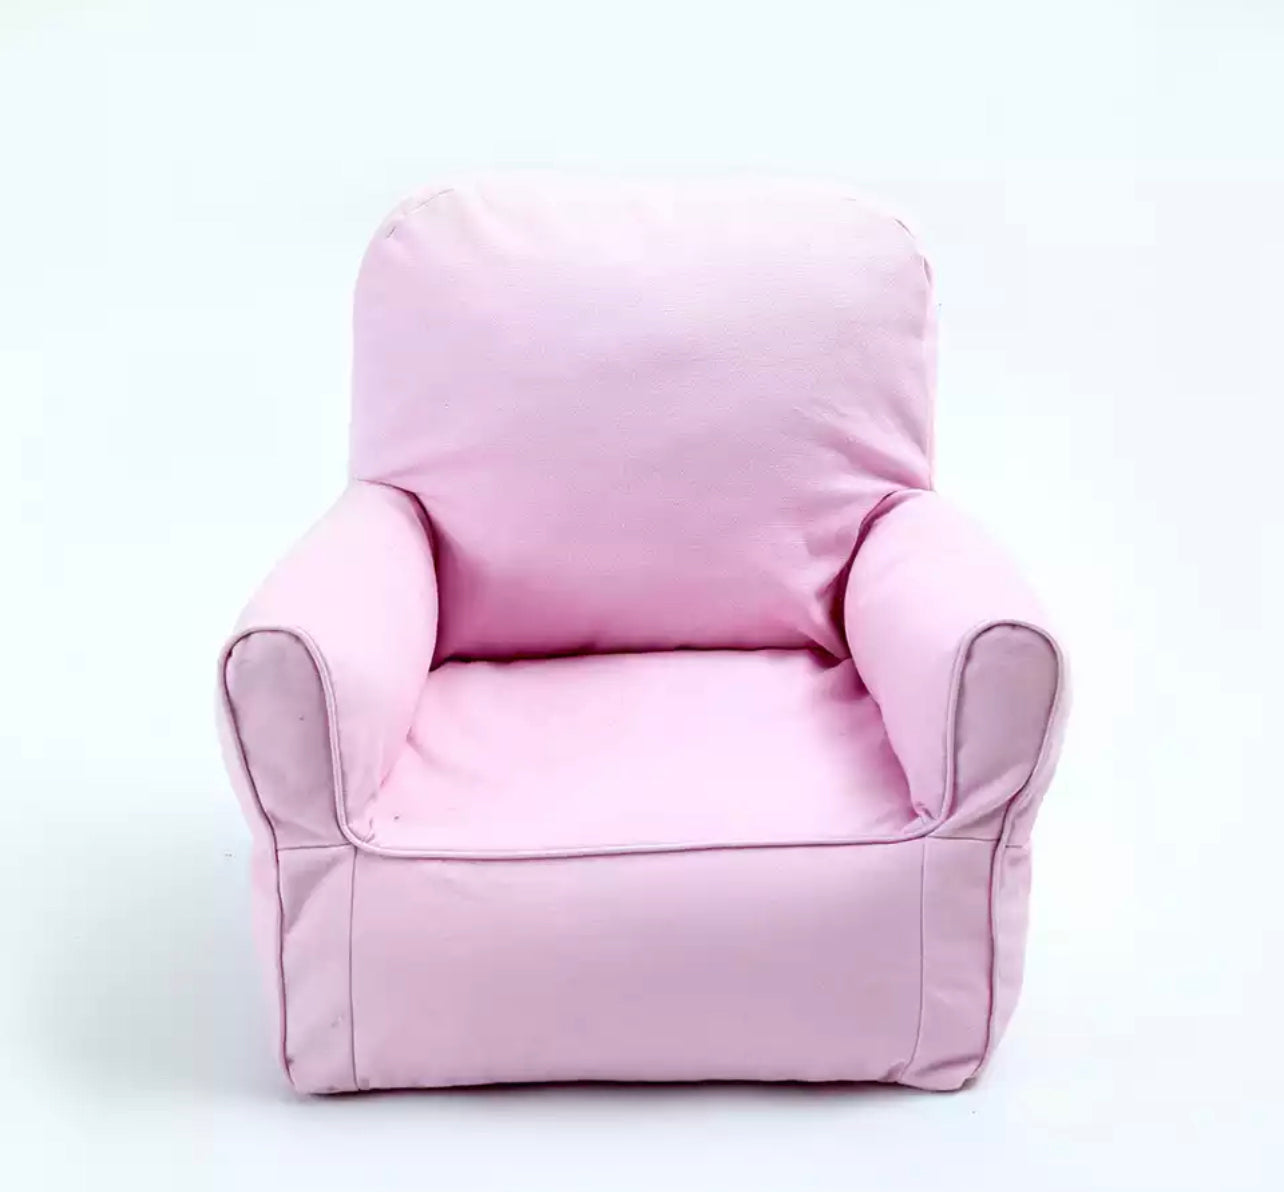 Portable Pet Sofa - Pink